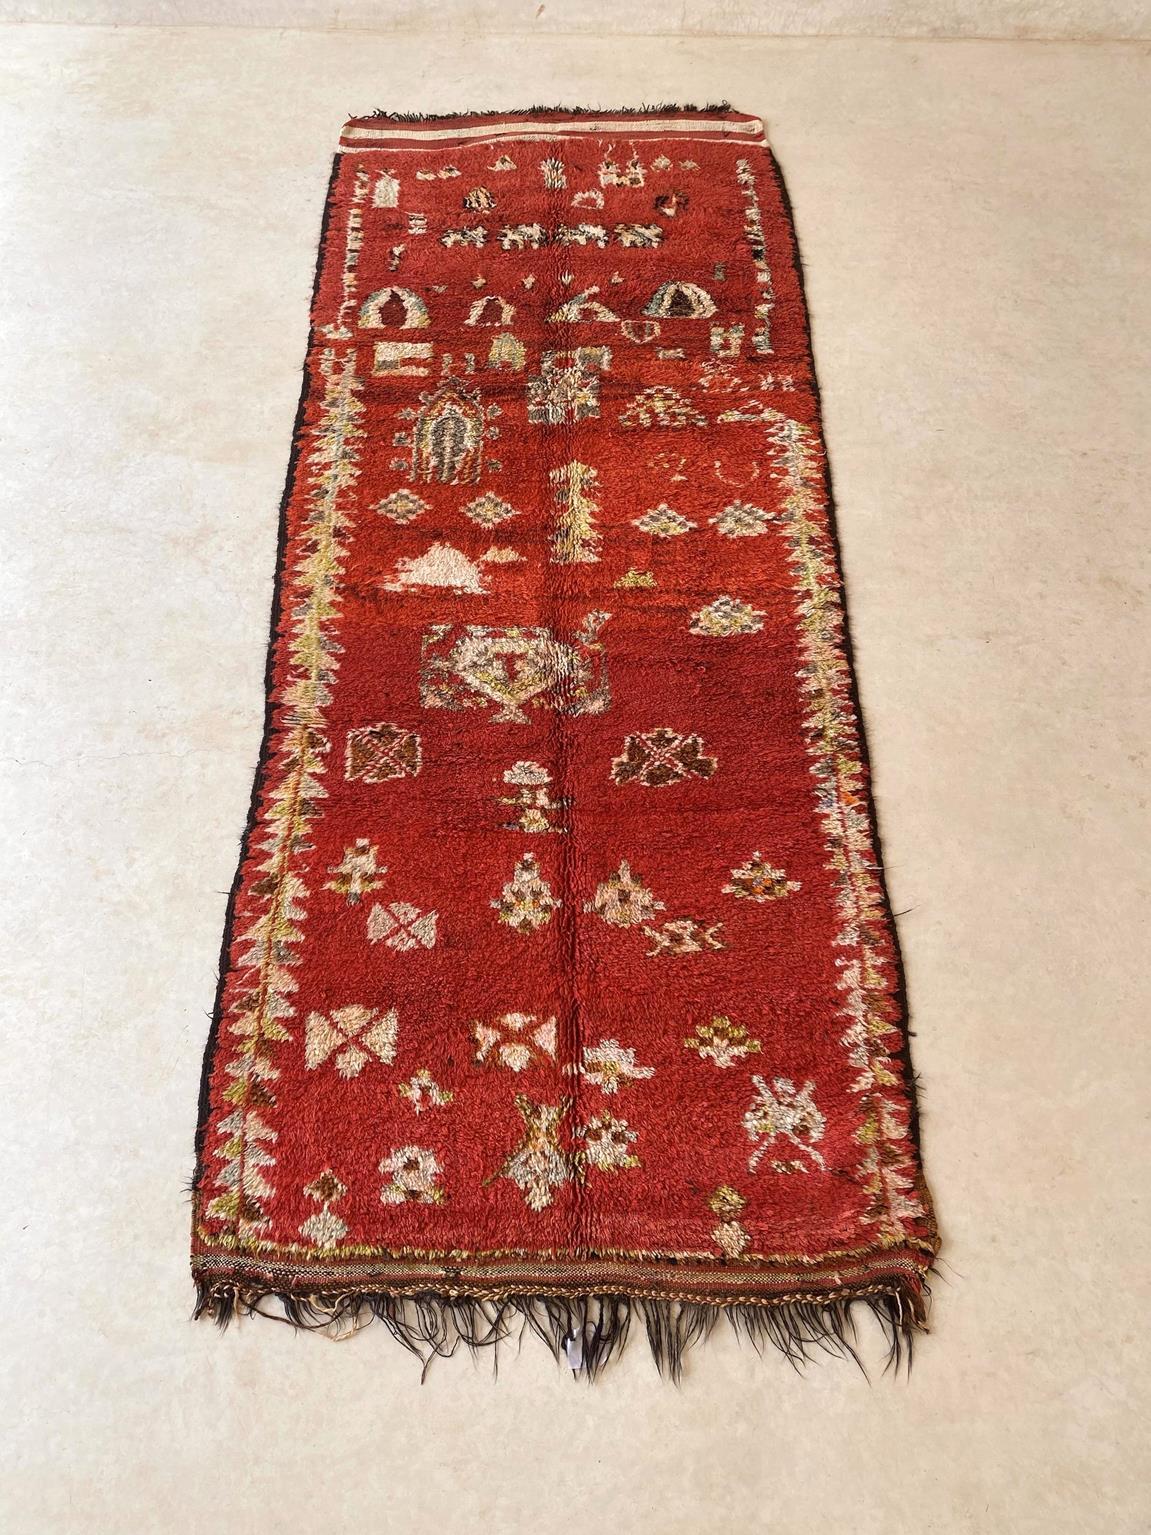 Hier ist ein sehr schöner, einzigartiger Vintage-Teppich, der wahrscheinlich vom Rehamna-Stamm stammt. Der Hintergrund ist ein tiefes Rot mit gelbgrünen, bräunlichen, grauen und cremefarbenen Mustern wie Rauten, Kreuzen und Schuppen und anderen, die